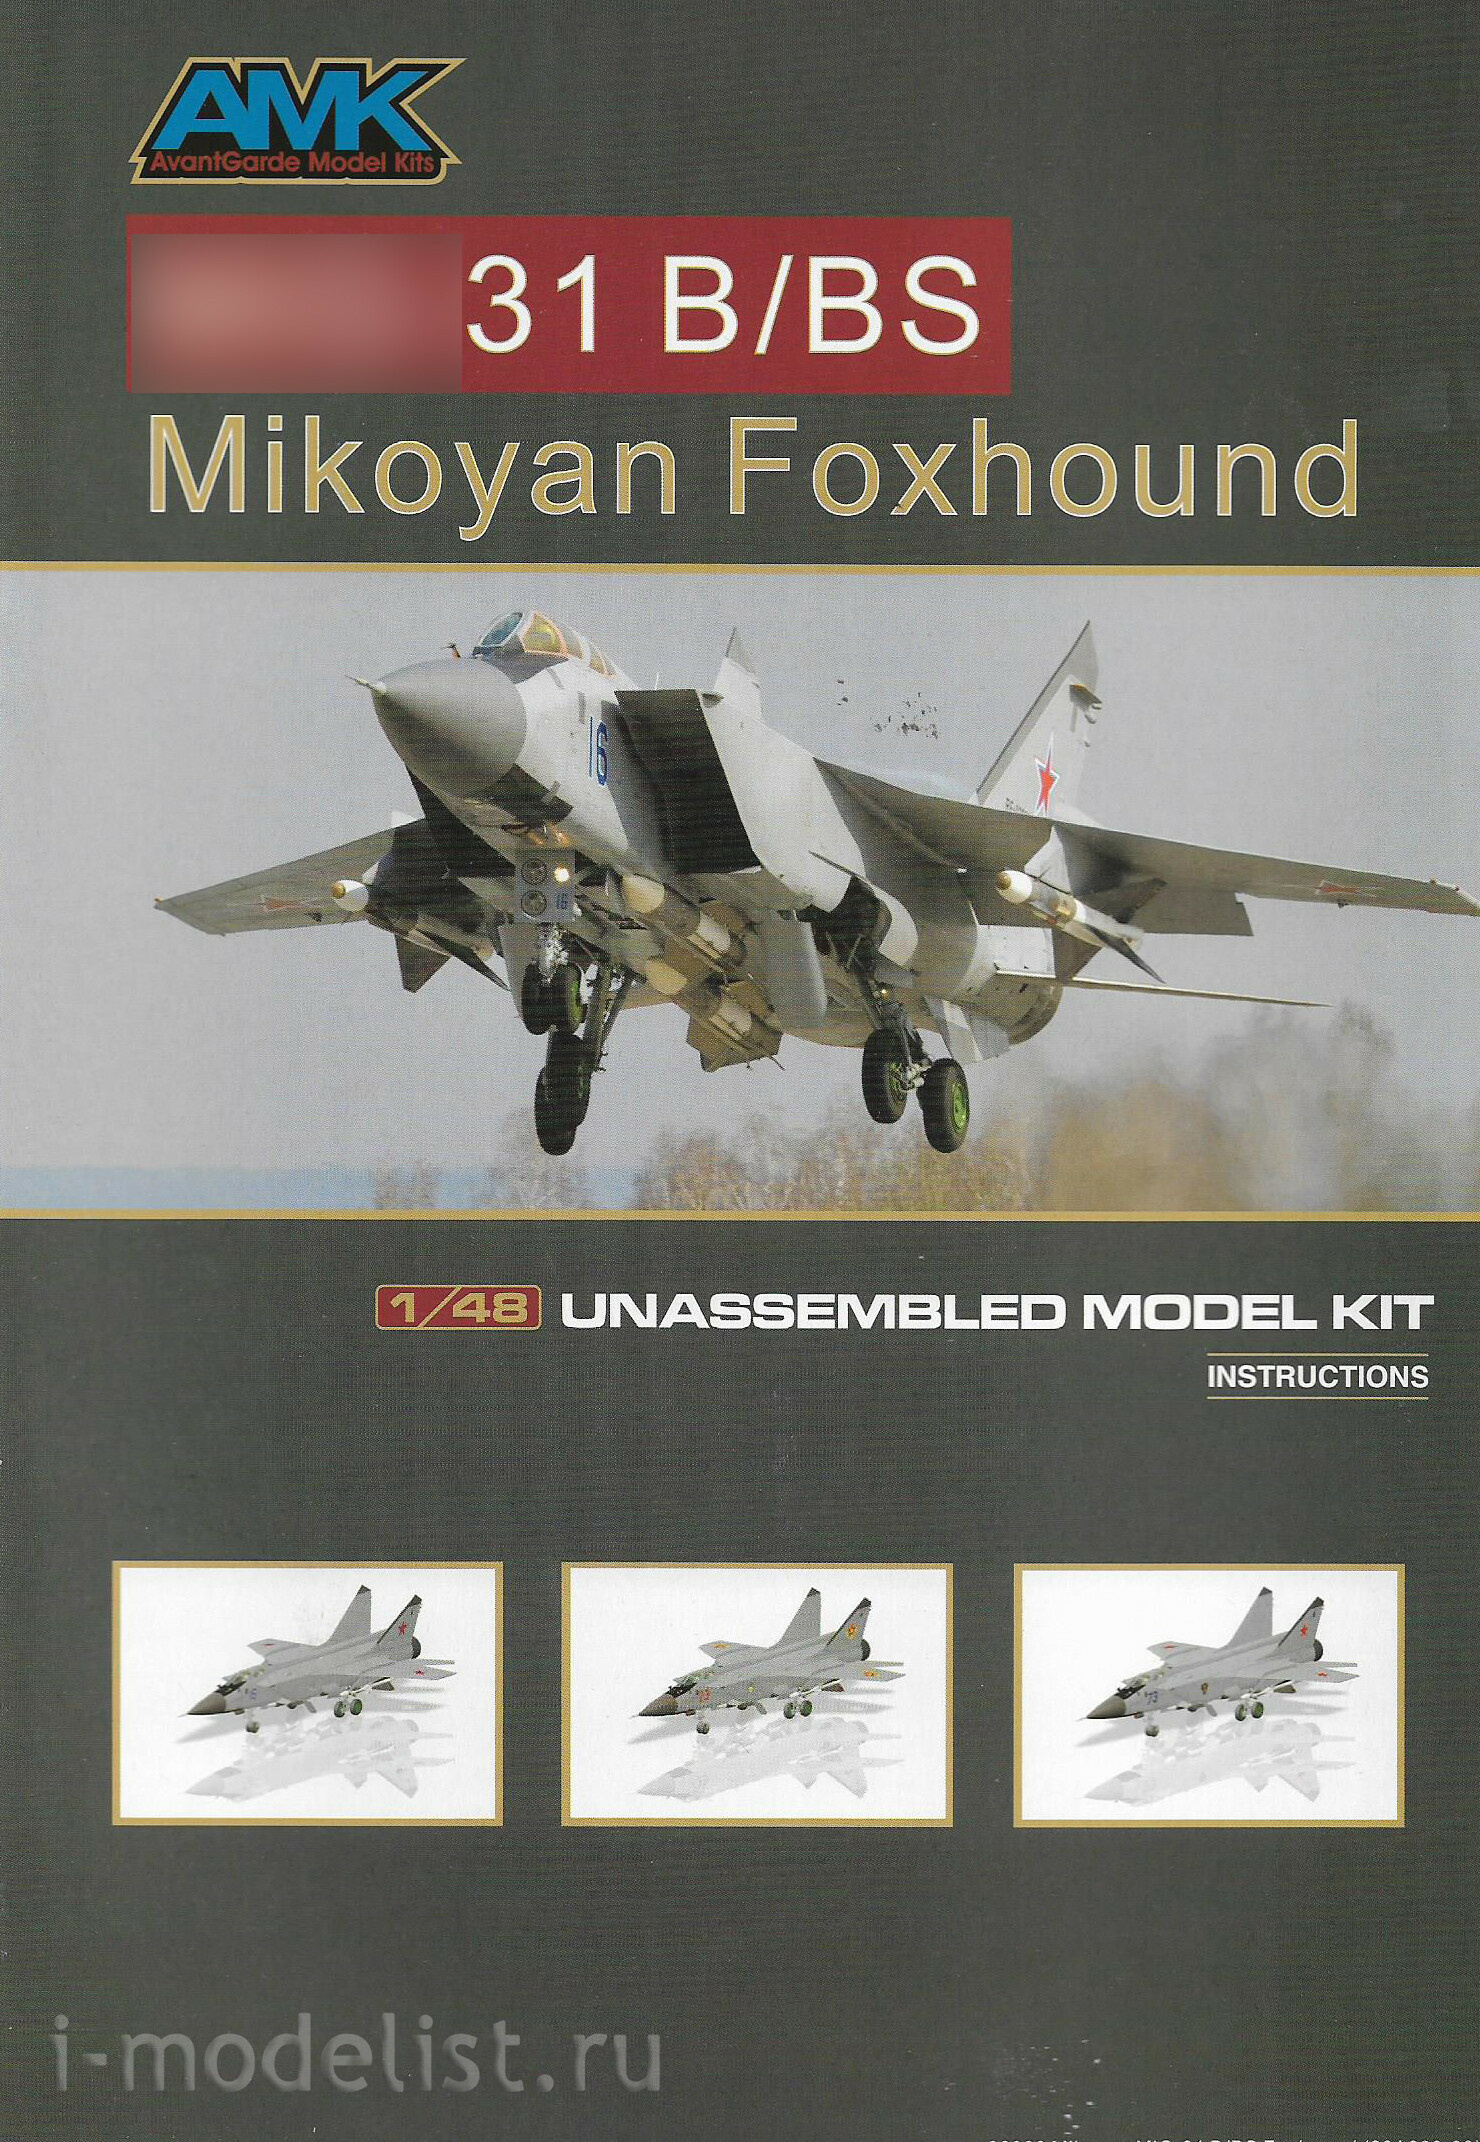 88008 AMK 1/48 Истребитель MiGG-31 B/BS Foxhound